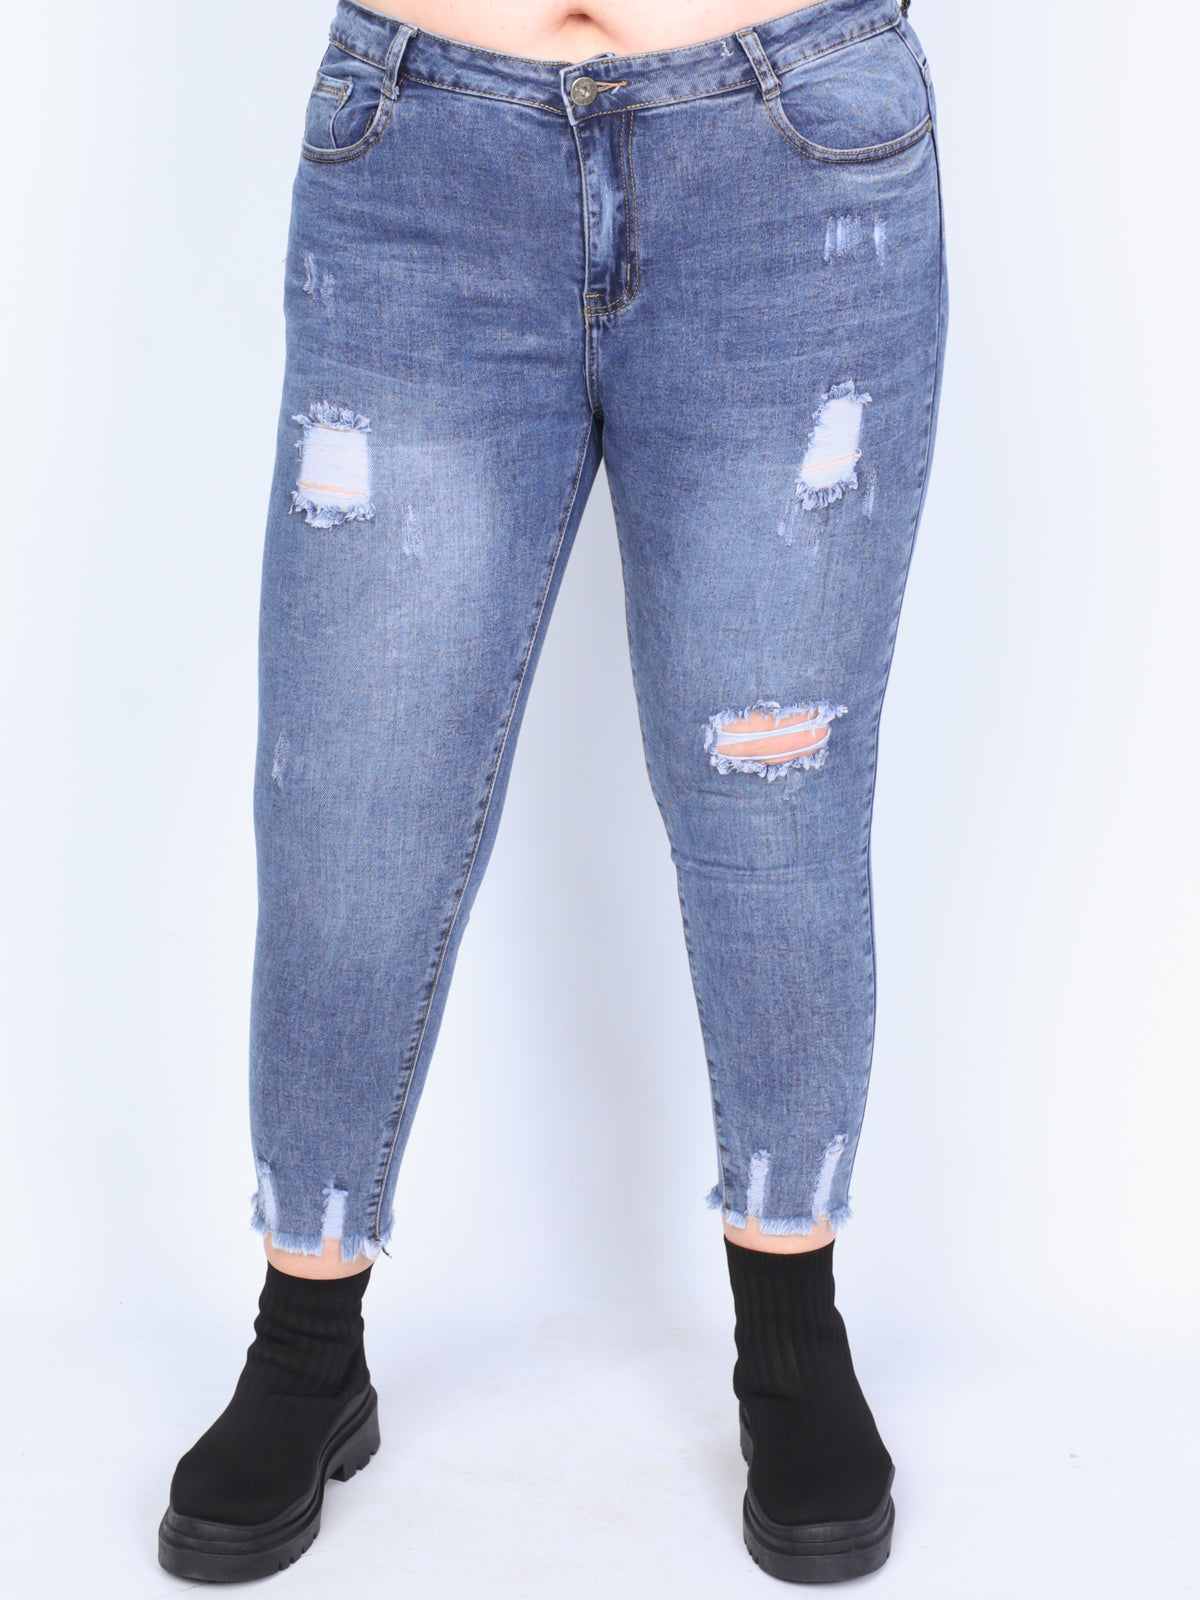 Plus size jeans m. huller og slidtage